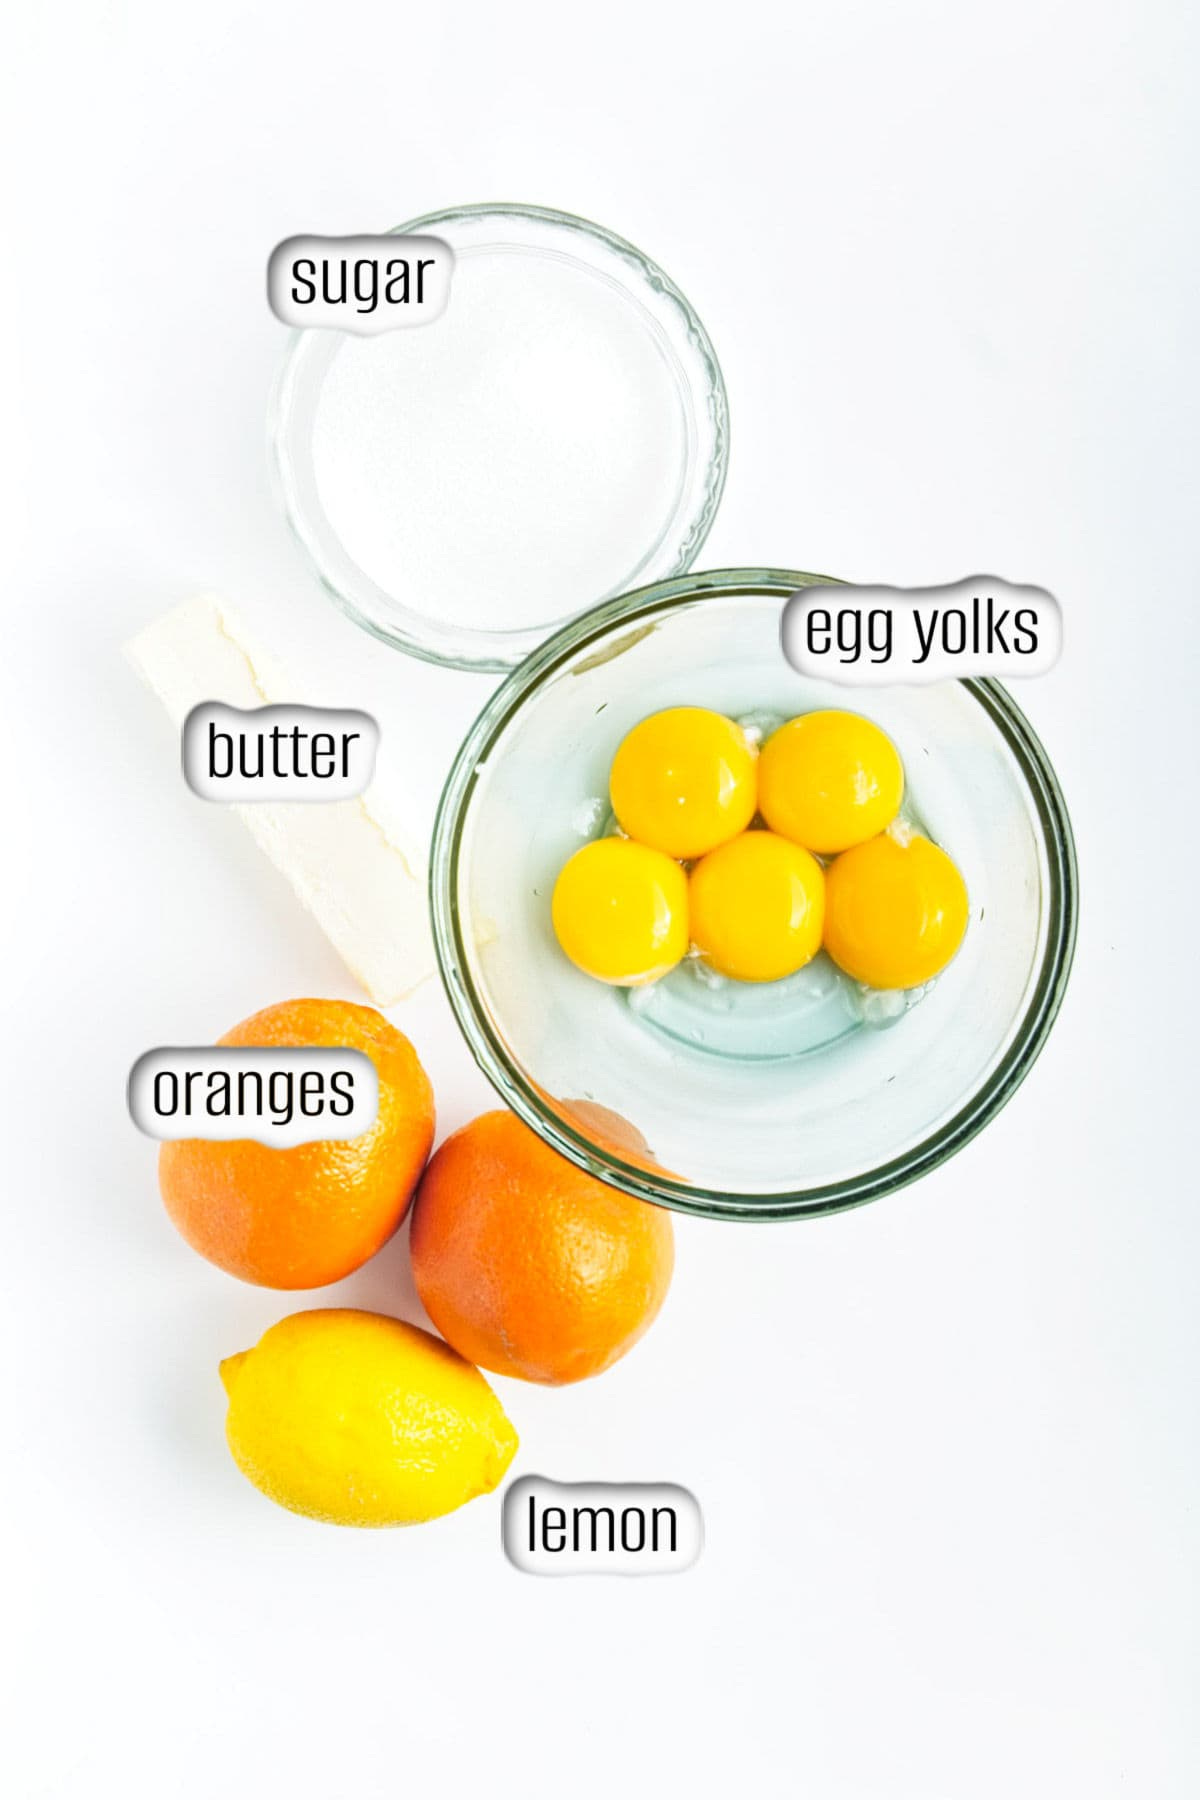 Lemon, oranges, butter, sugar and bowl of egg yolks.